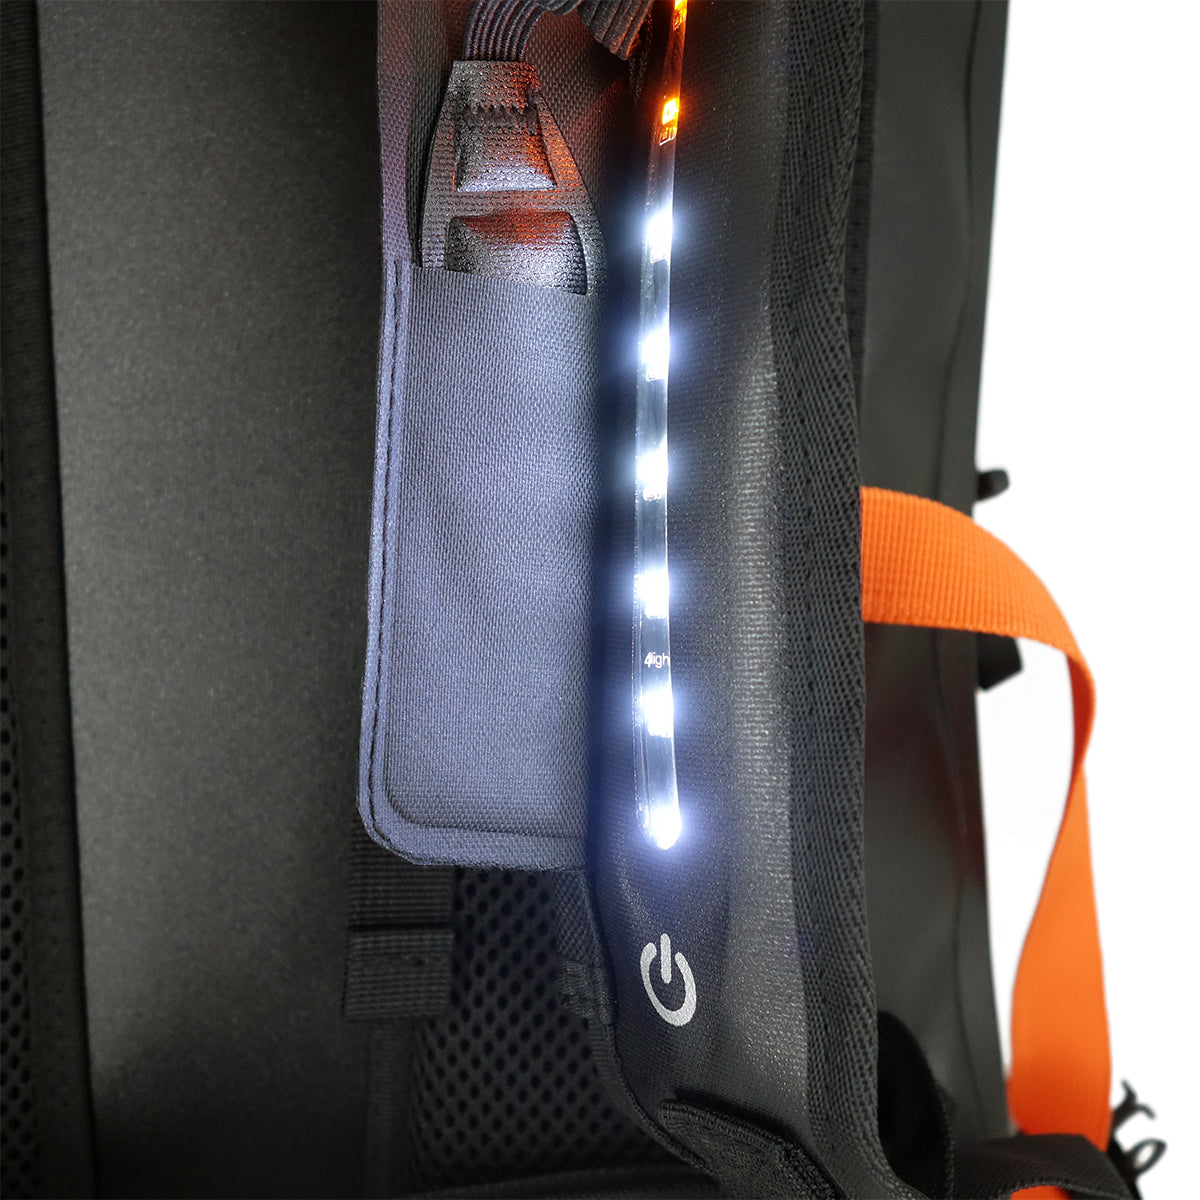 Illumine, wytrzymały, wodoodporny plecak ze światłami LED, pojemność 30L 